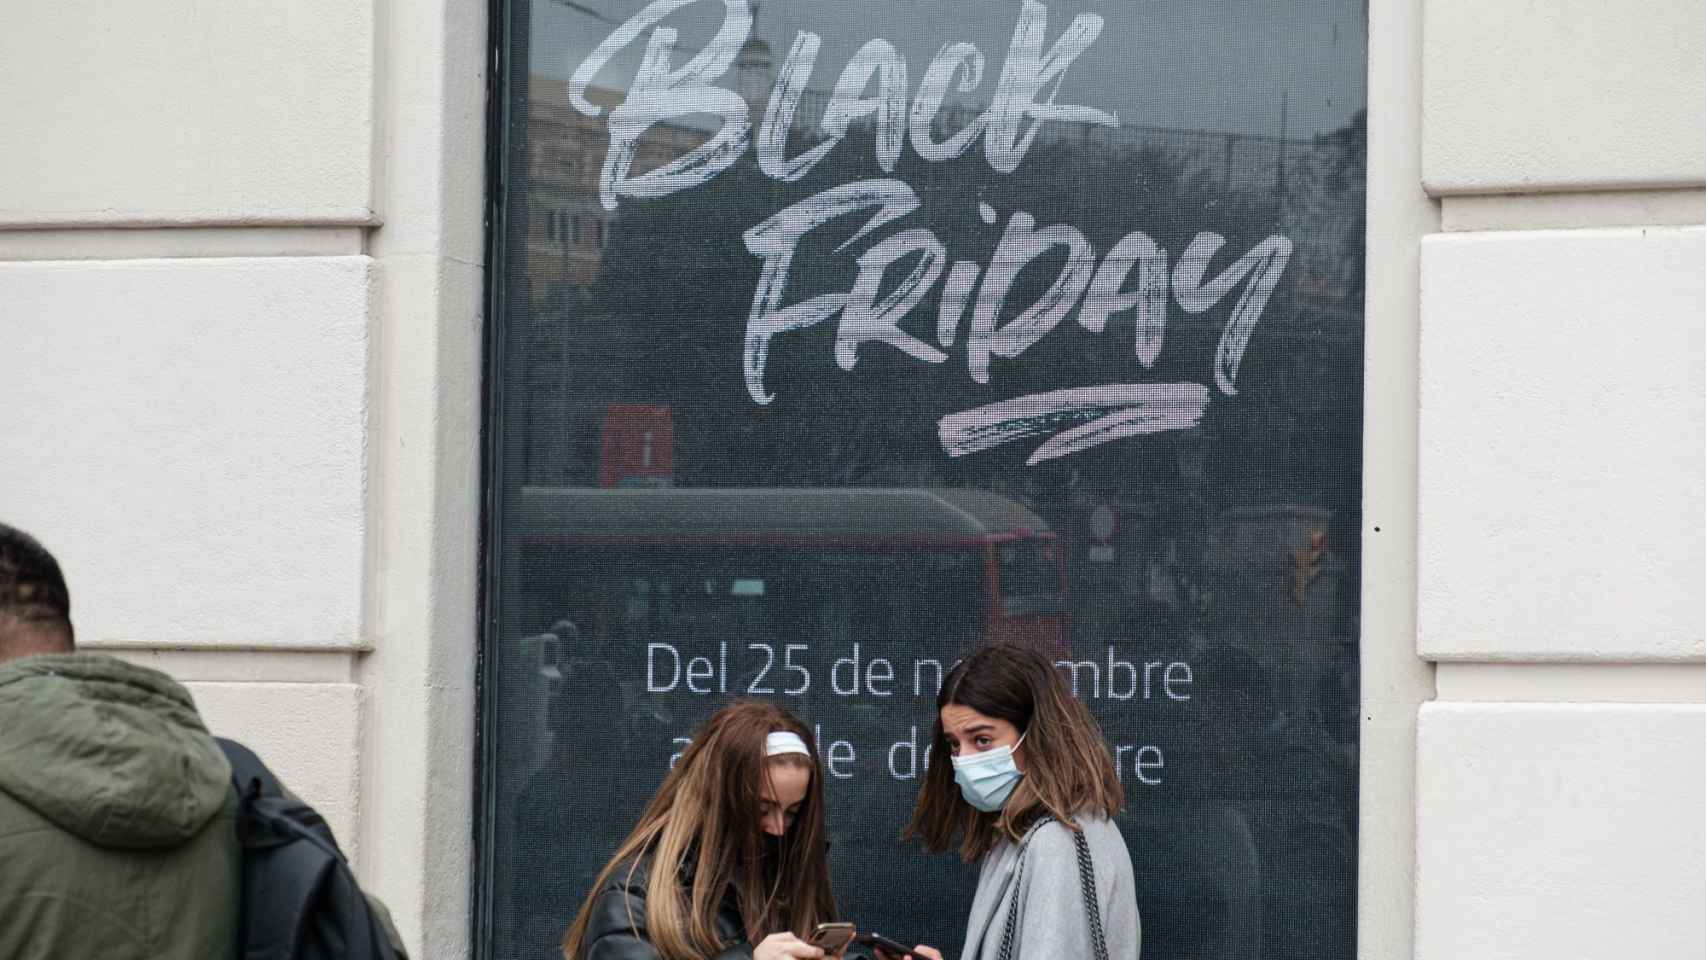 El Black Friday llega el próximo 25 de noviembre a Barcelona